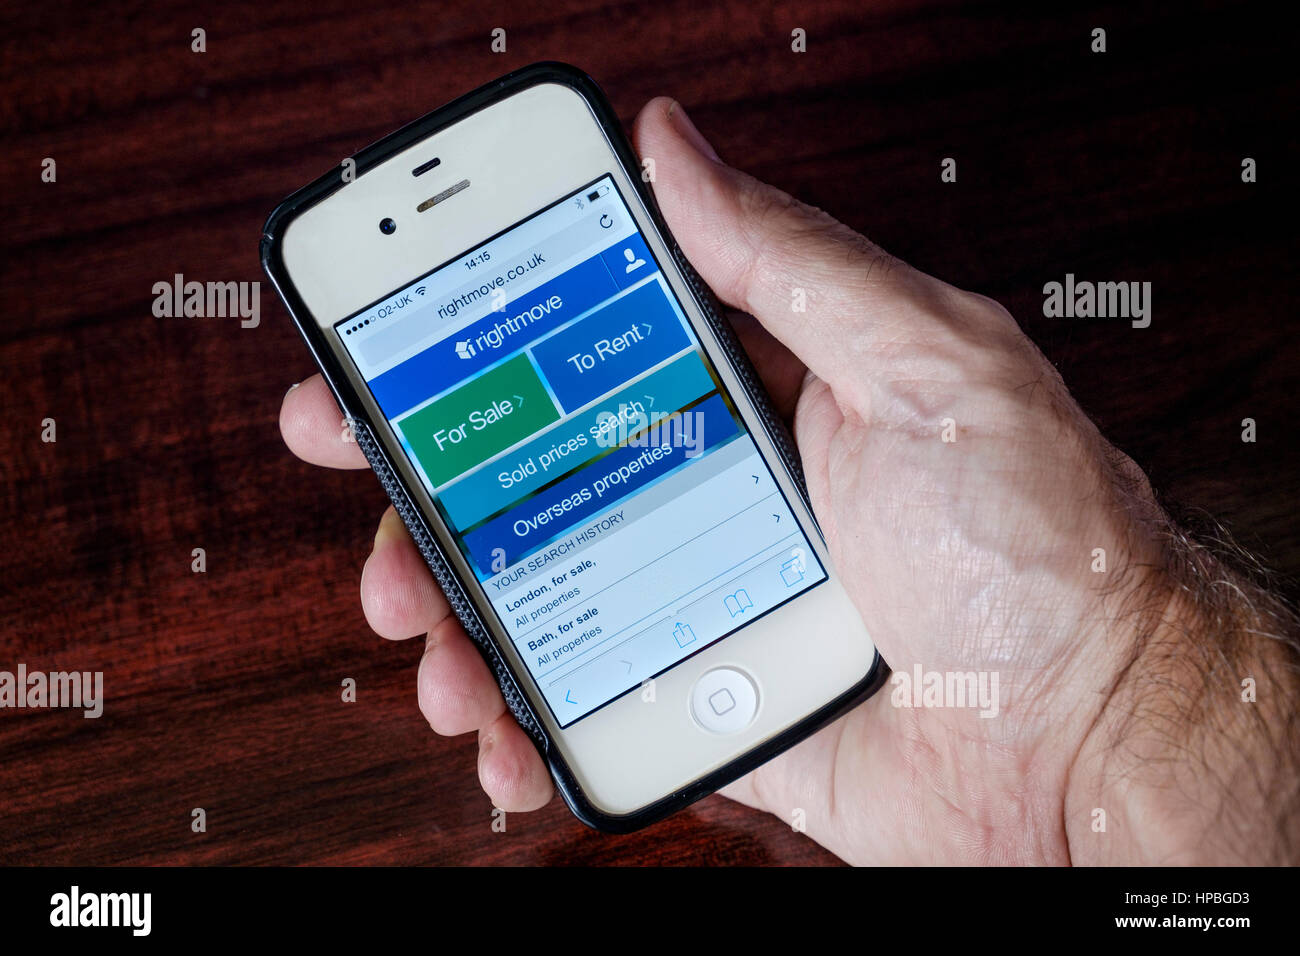 Die Online-Immobilien-Website Rightmove ist abgebildet auf einem Iphone Handy angezeigt wird. Stockfoto